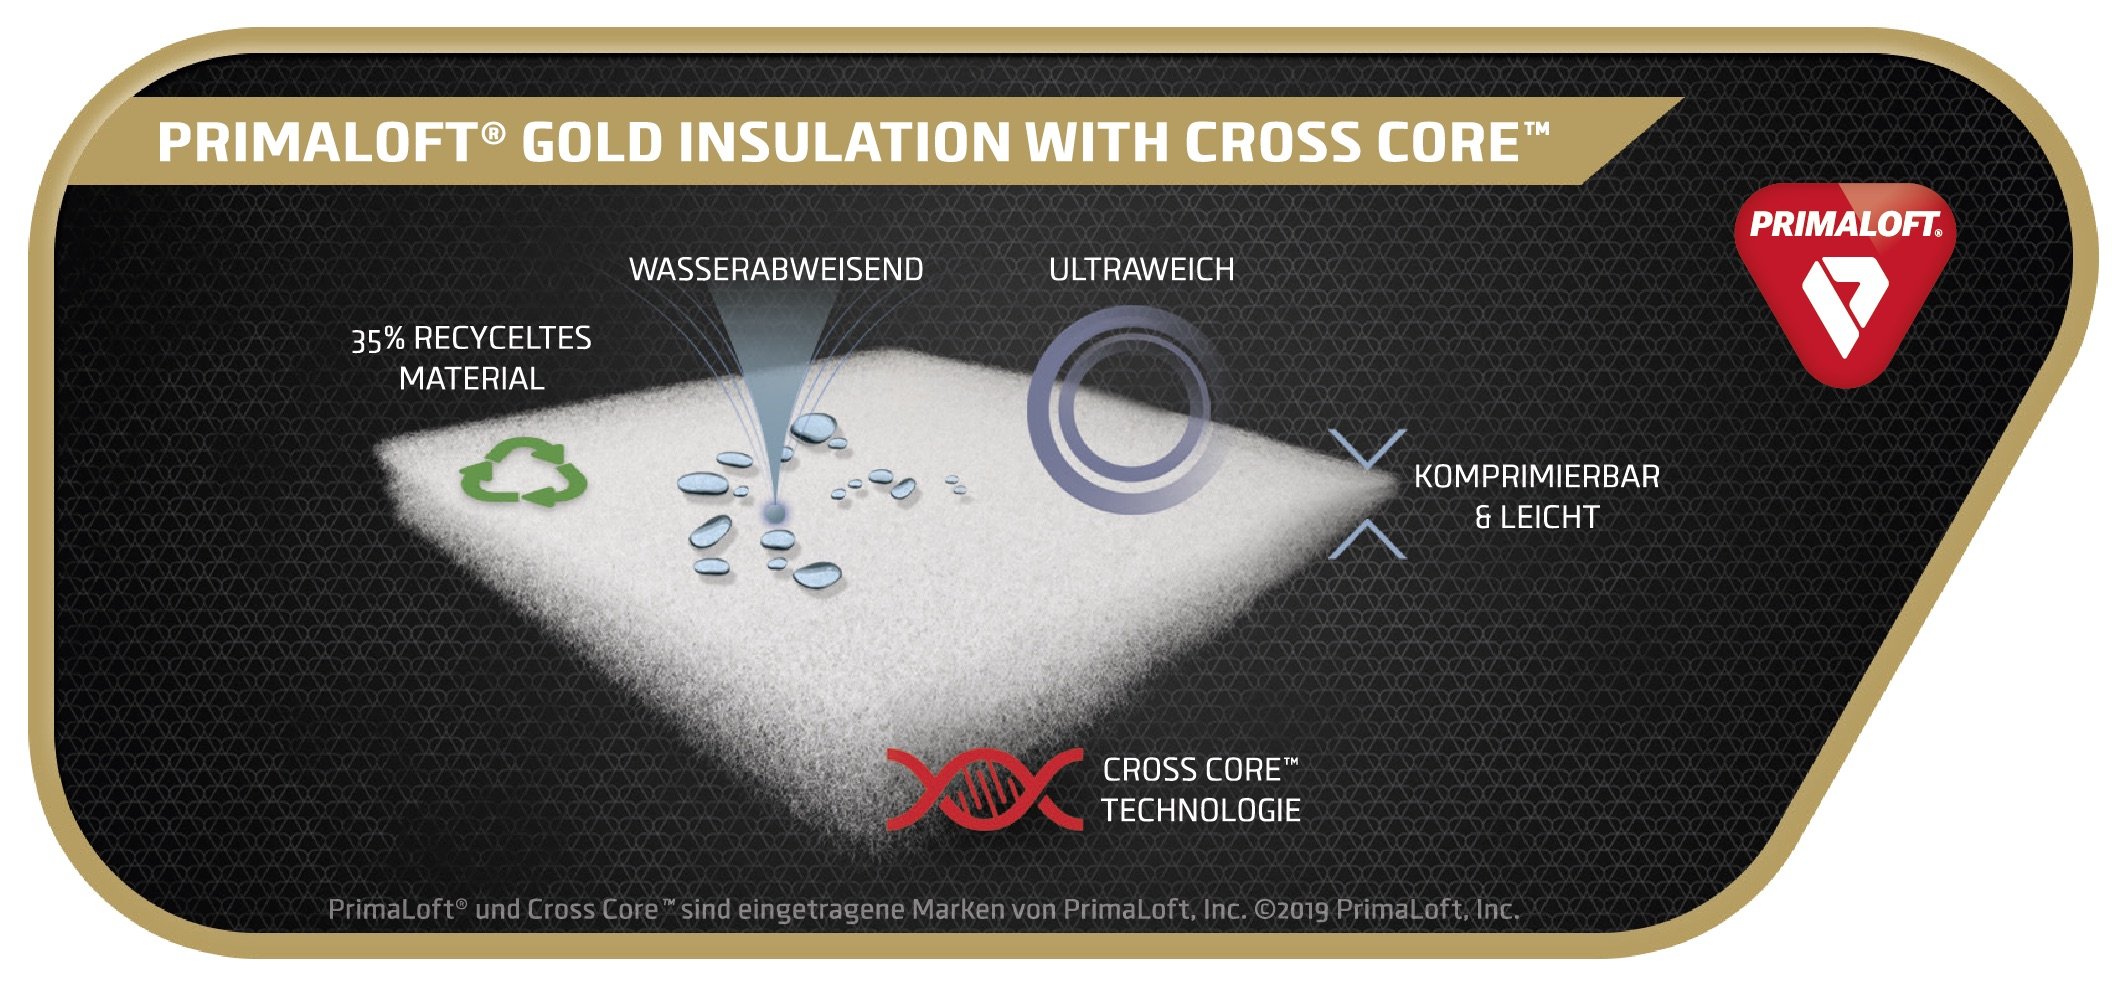 News - PrimaLoft® Cross Core™: PrimaLoft® kombiniert bewährte Technologien für noch bessere Isolationswerte